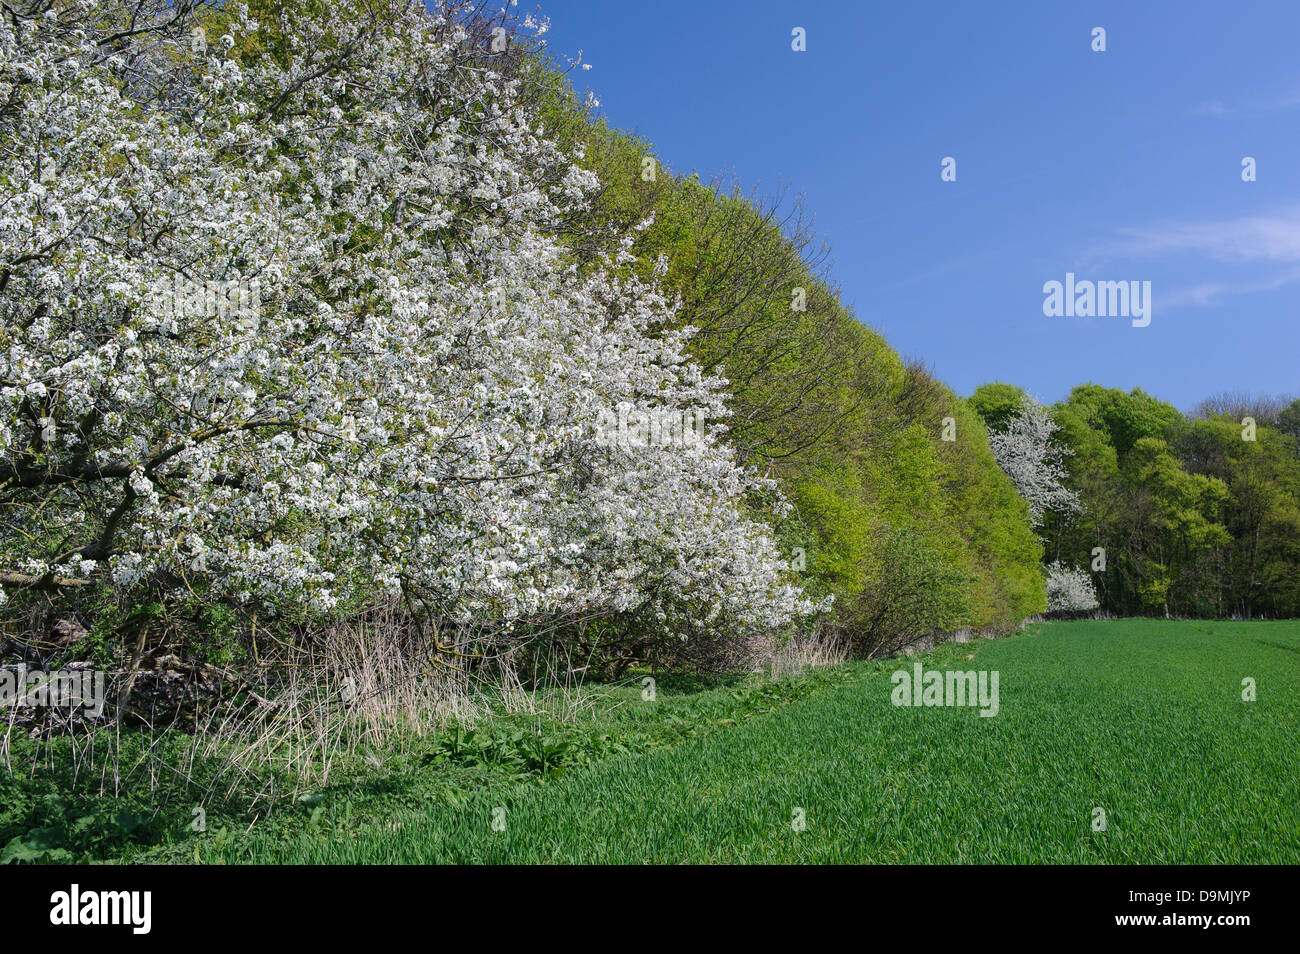 Fioritura ciliegio campo di fiore spring molla albero ciliegio cherry ciliegio cherry blossom bordo della foresta Foto Stock